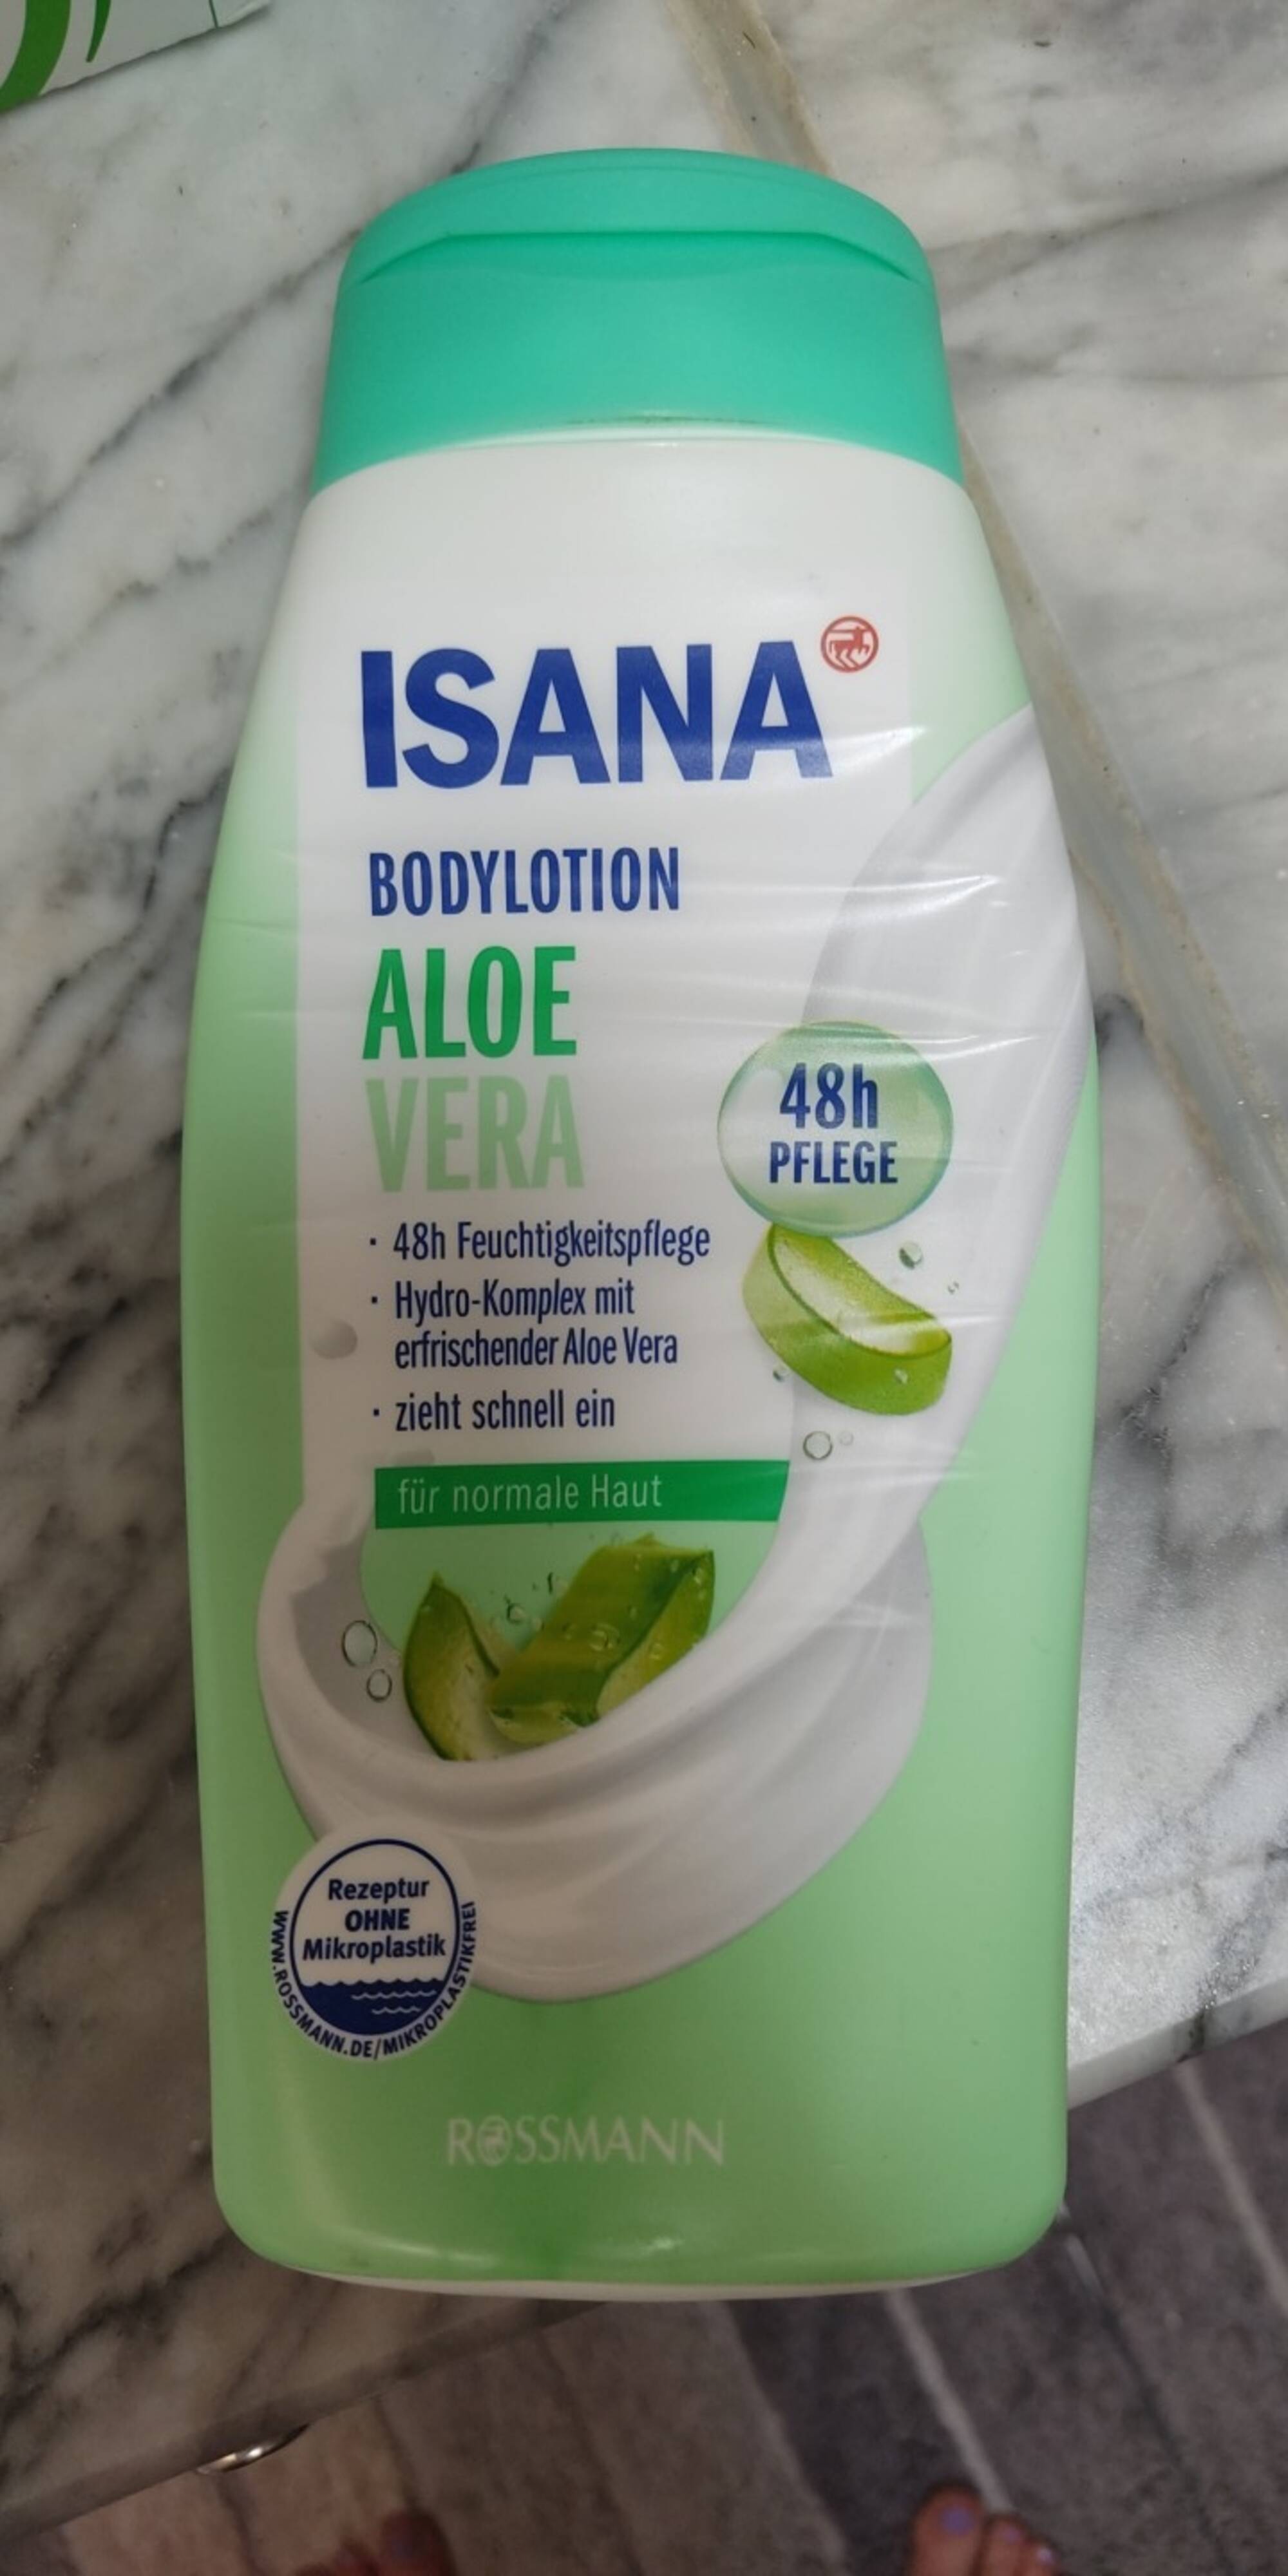 ISANA - Body lotion aloe vera